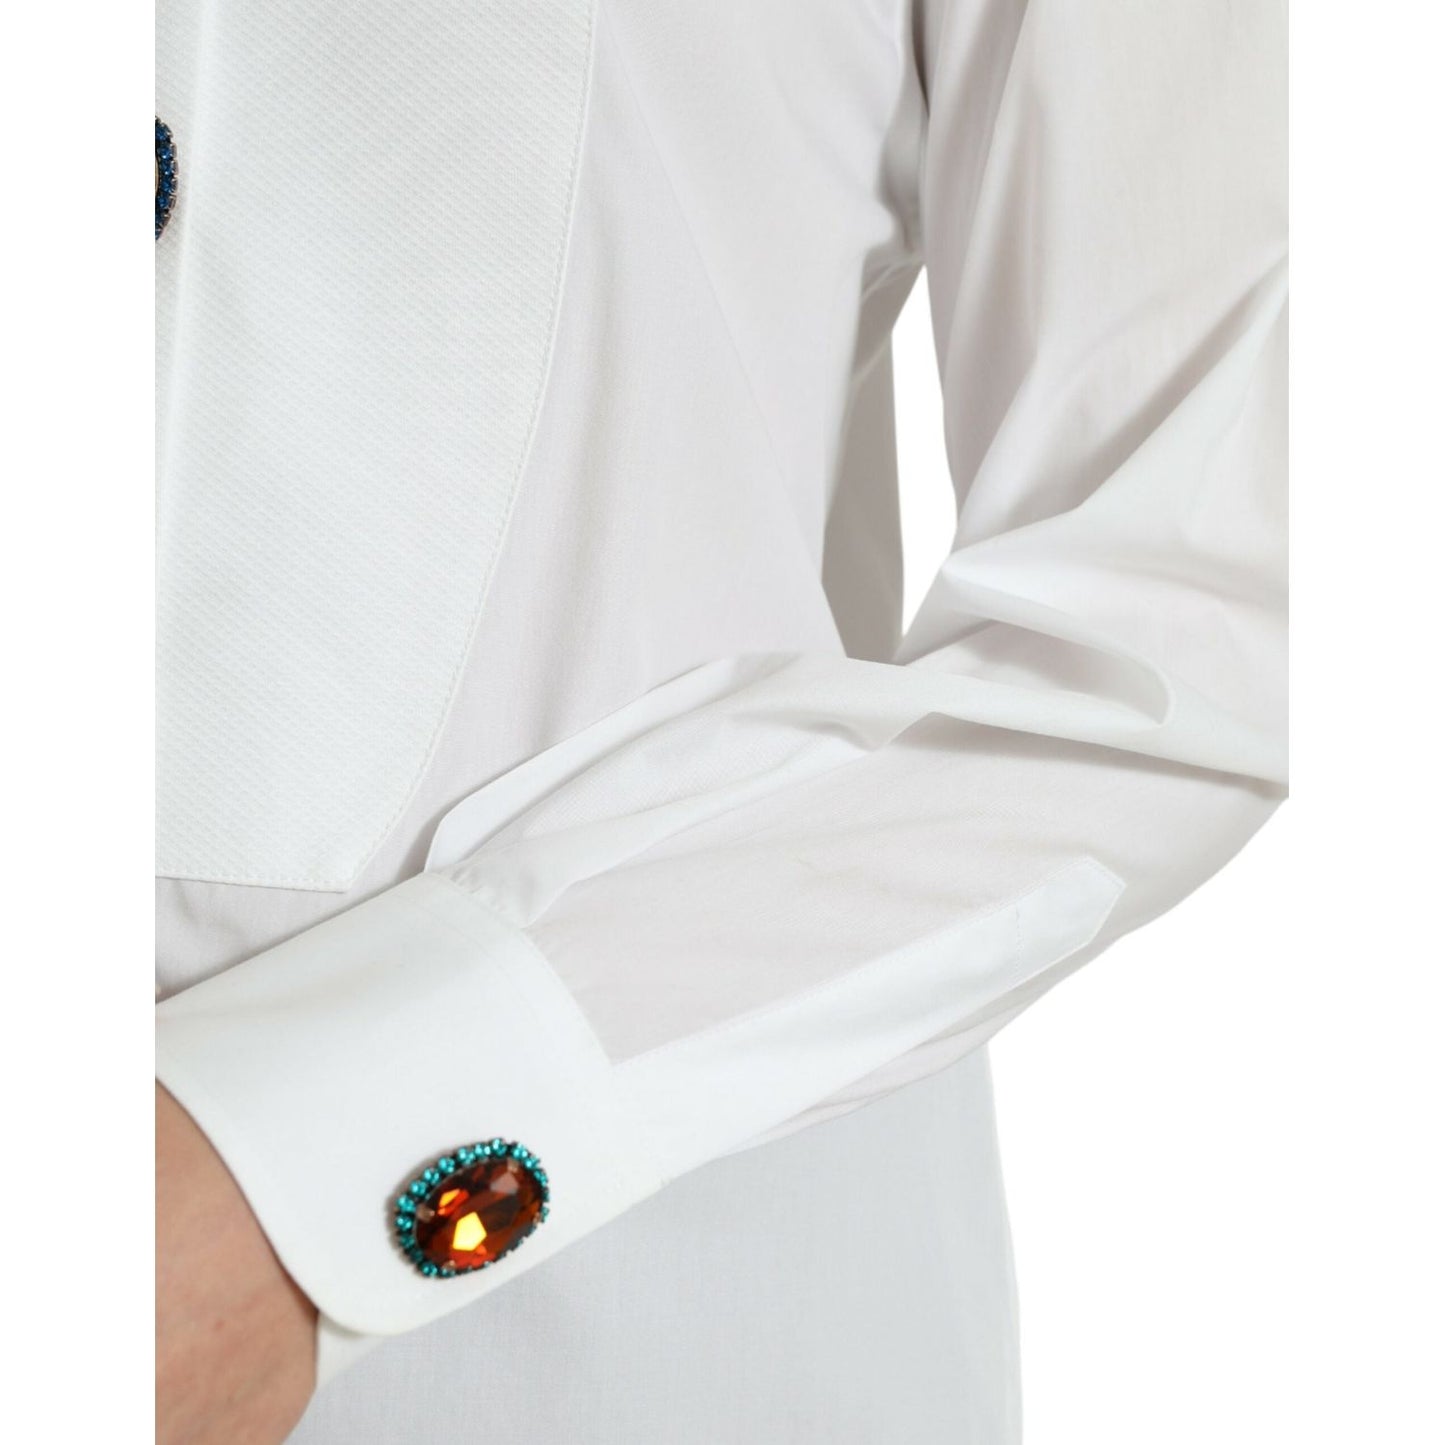 Dolce & Gabbana Elegant Crystal-Embellished White Cotton Top white-cotton-crystals-embellished-shirt-top